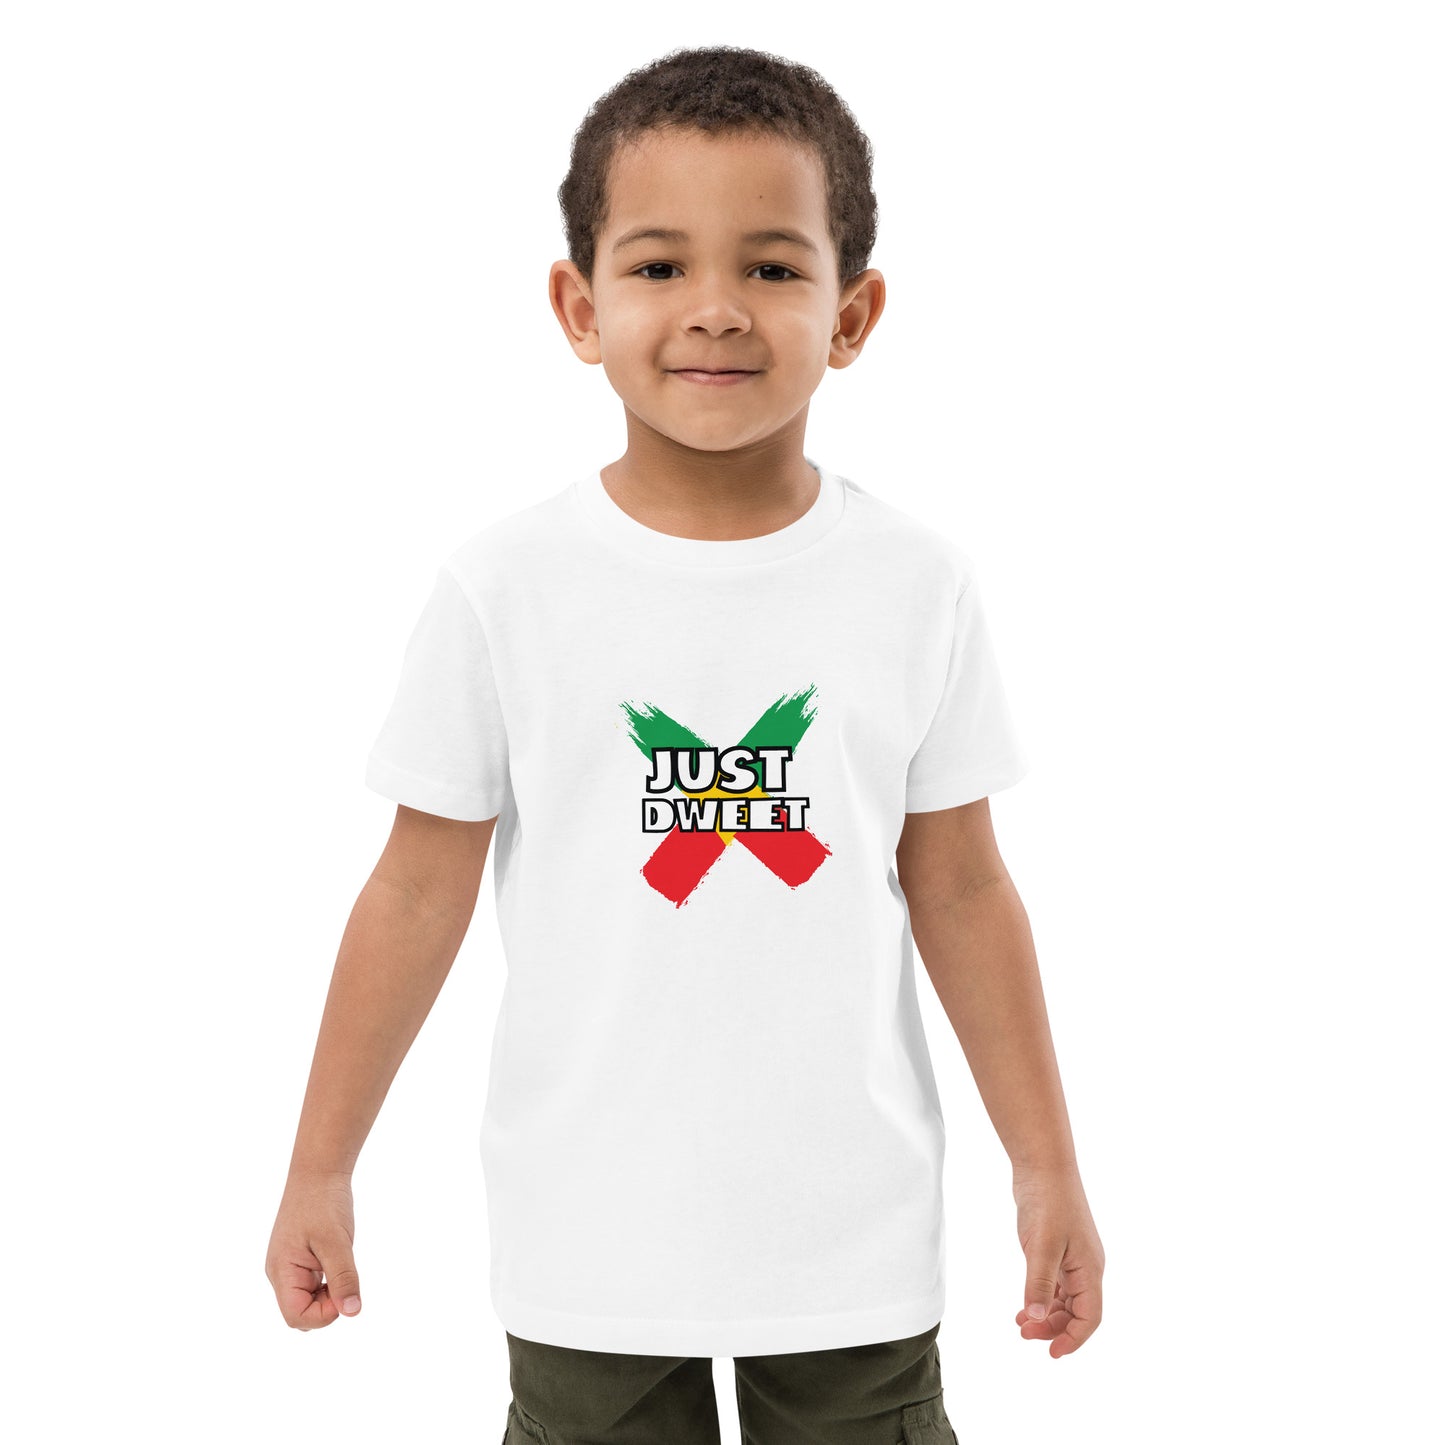 Organic cotton kids "Just Dweet" t-shirt